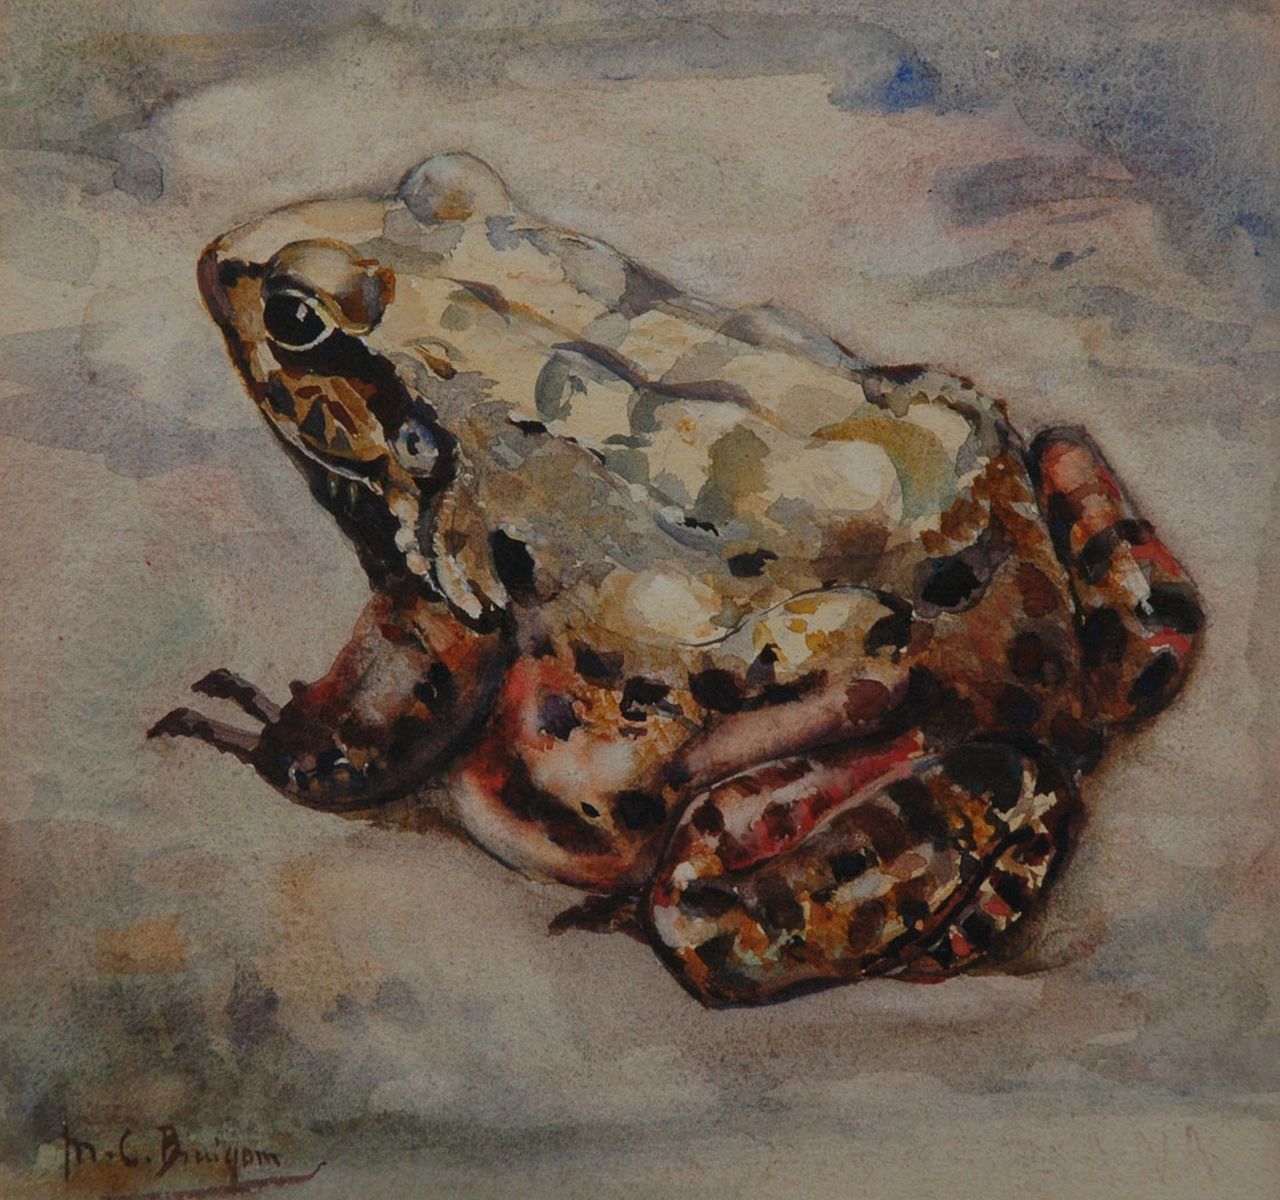 Bruigom M.C.  | Margaretha Cornelia 'Greta' Bruigom, A bullfrog, Aquarell auf Papier 18,9 x 19,8 cm, signed l.l.